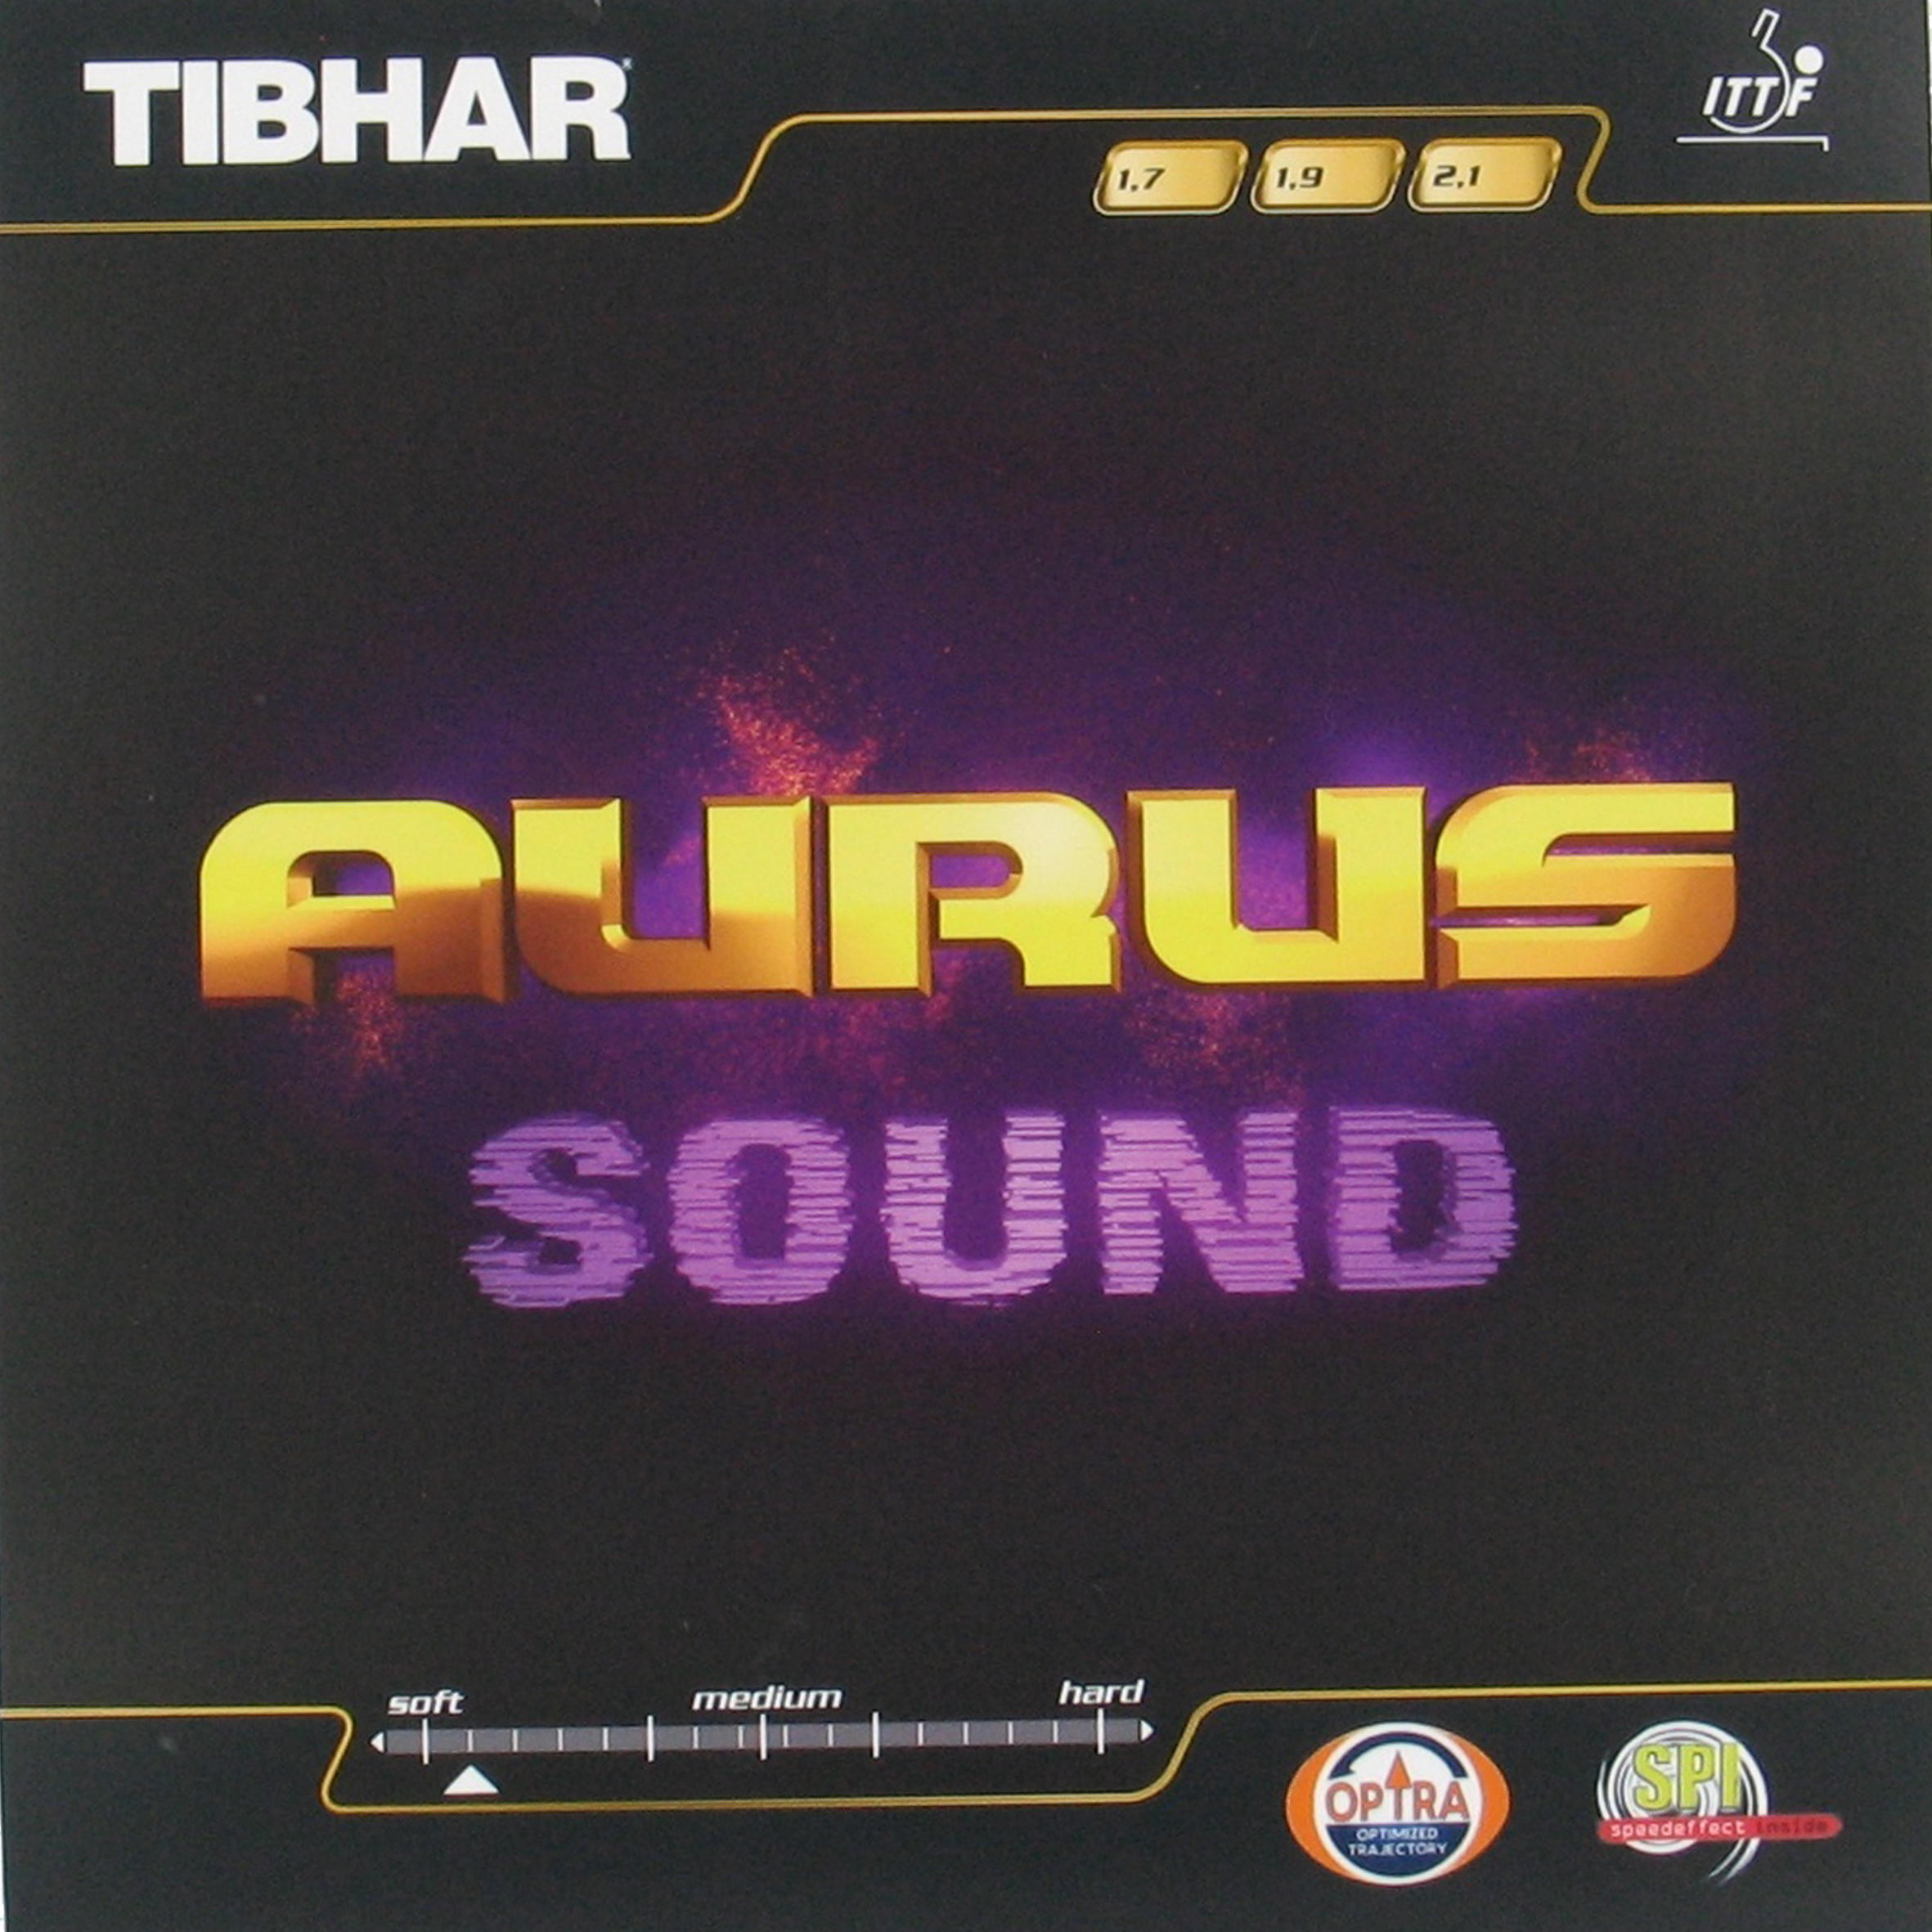 Накладка для настольного тенниса Auras Sound TIBHAR tibhar aurus мягкая резиновая накладка для настольного тенниса германия